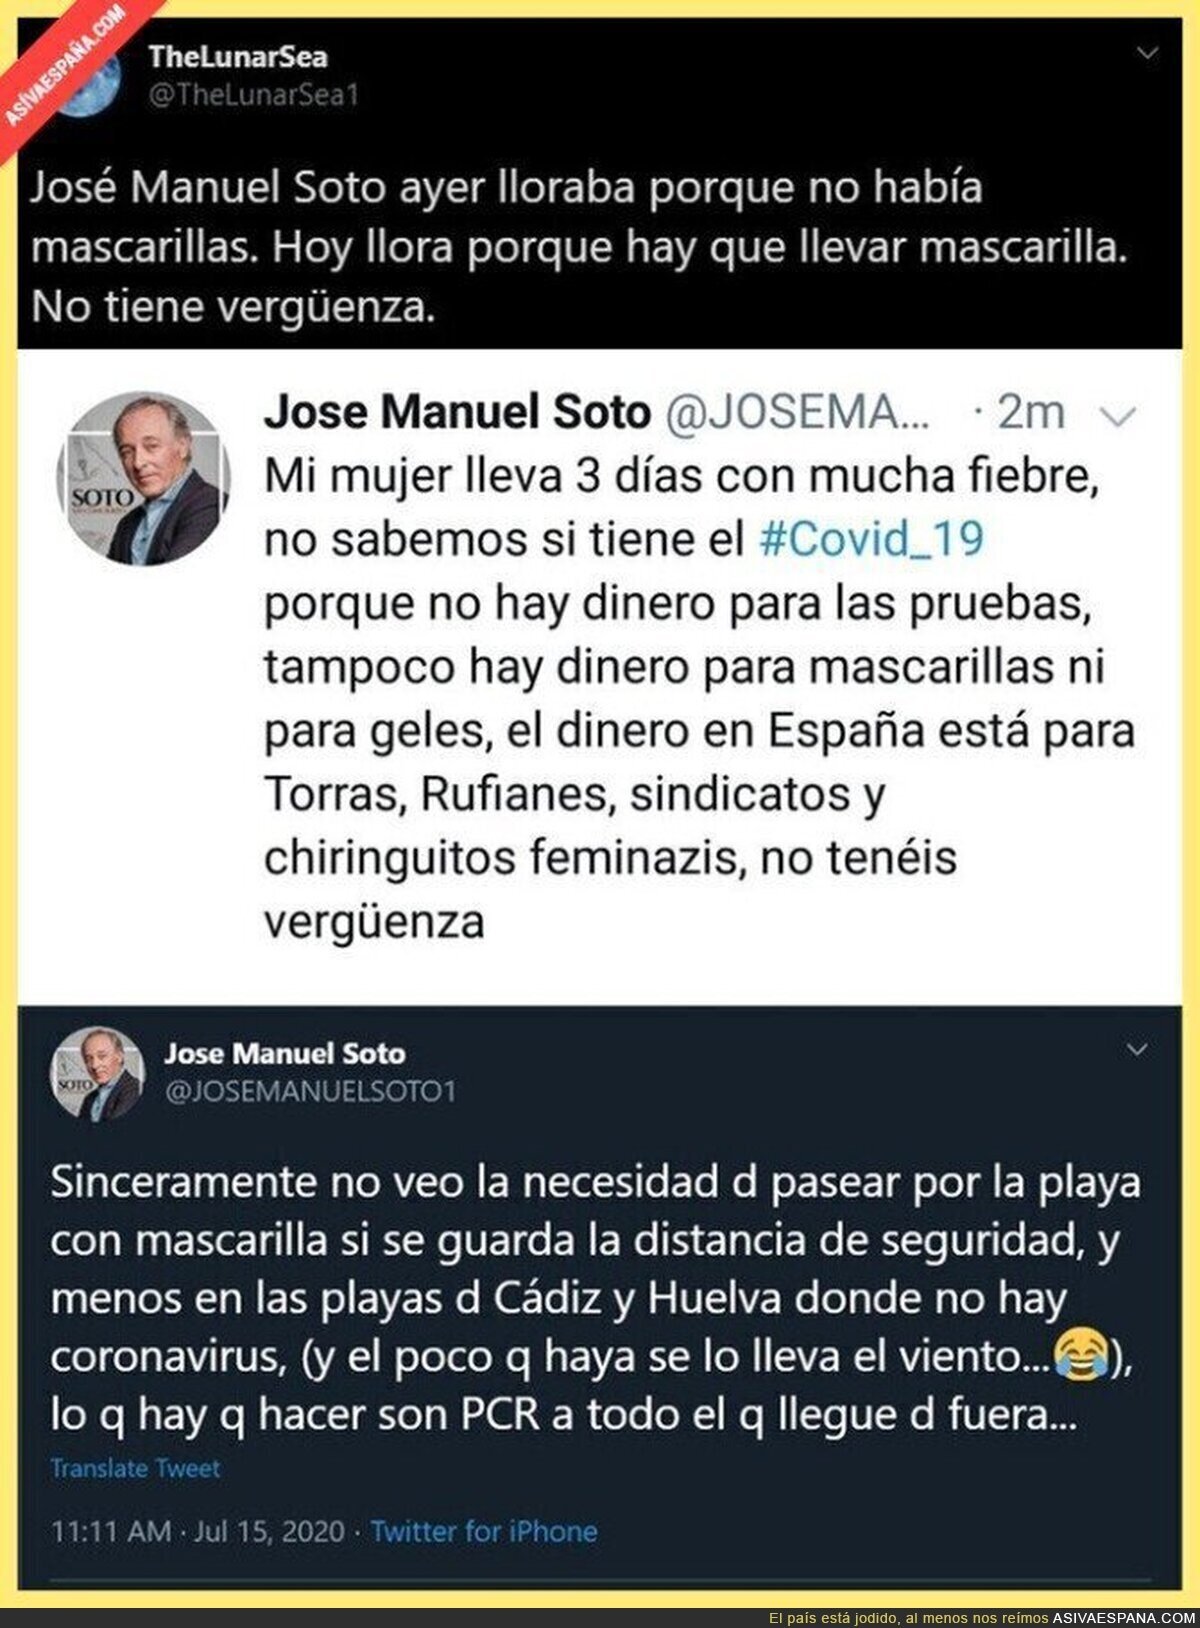 José Manuel Soto es muy mala persona